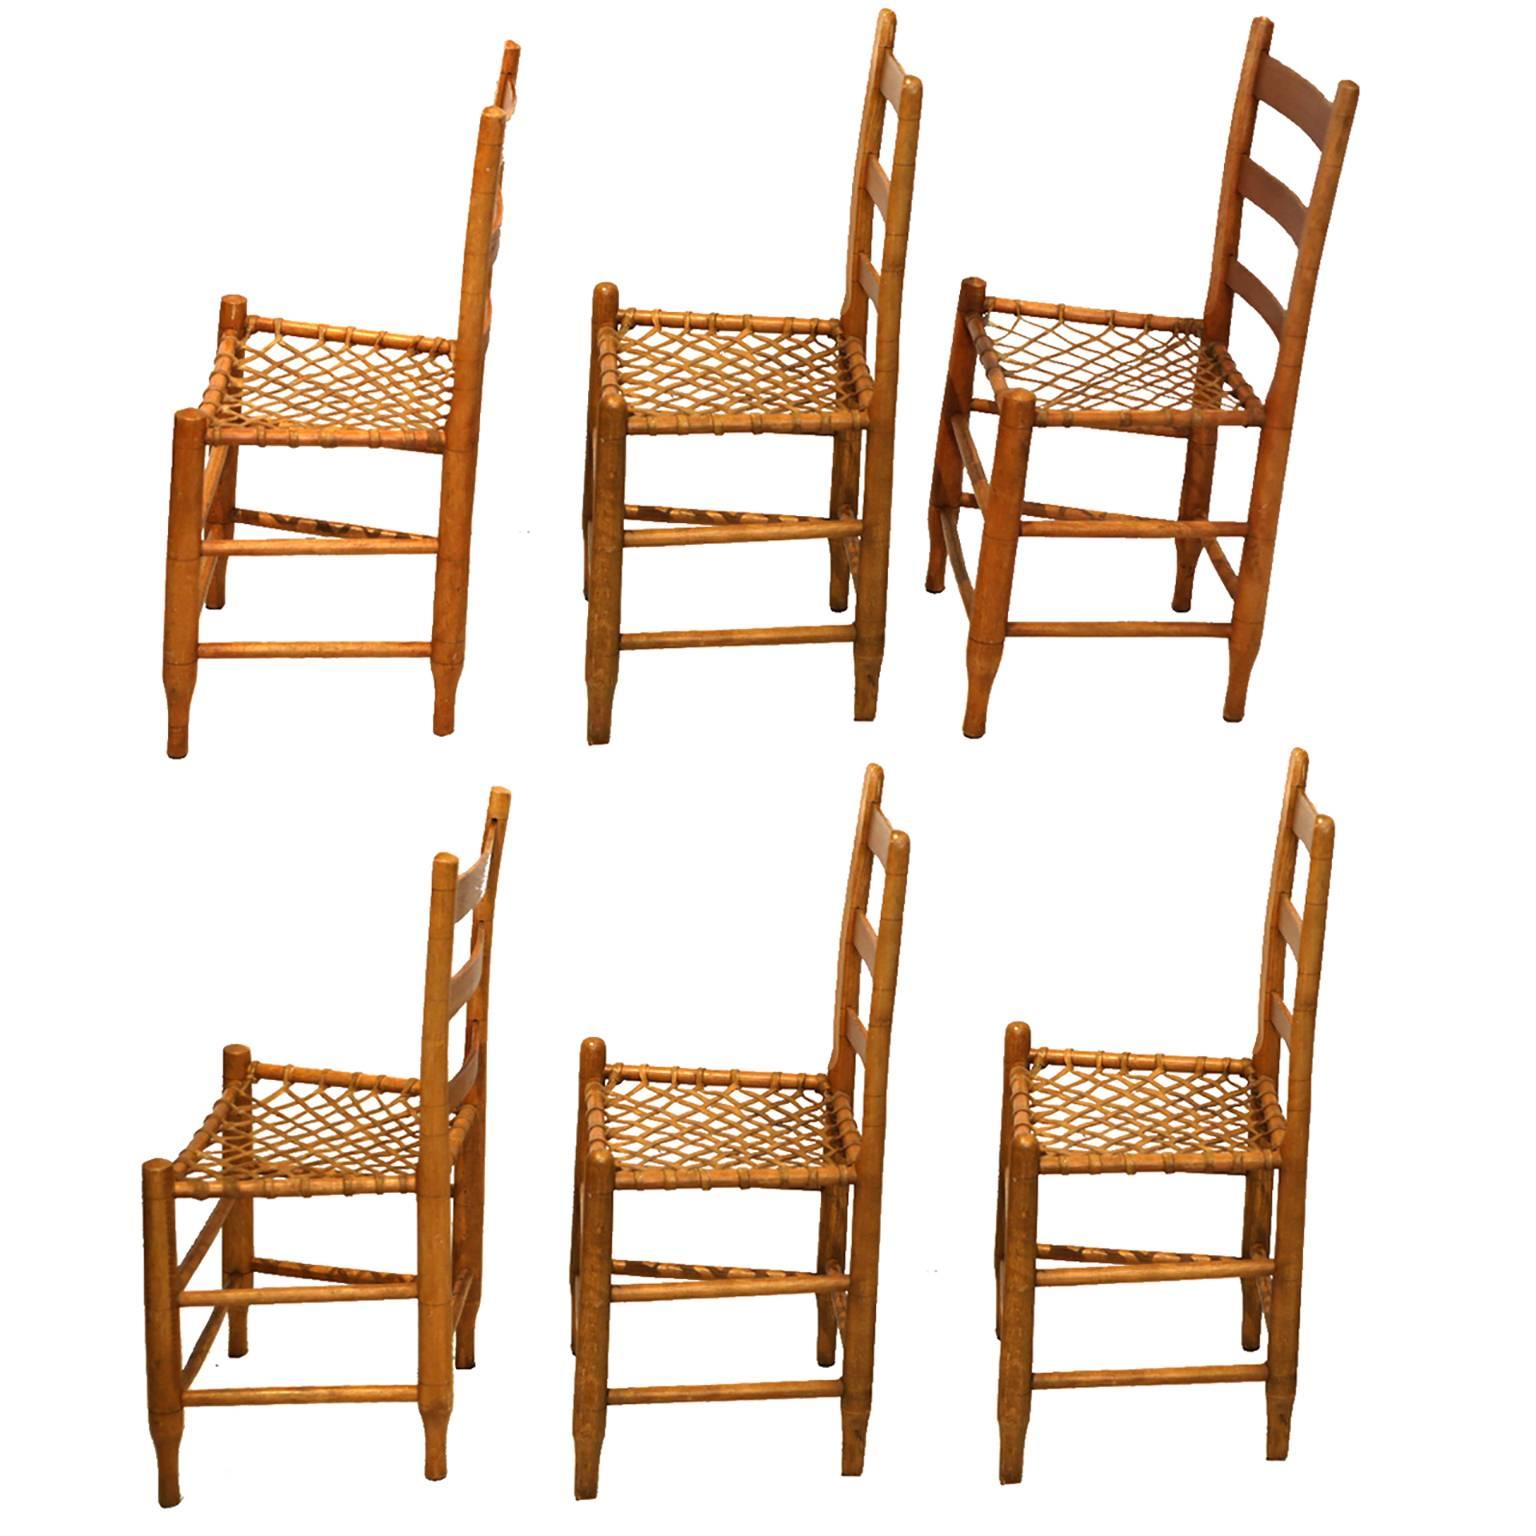 handmade chairs